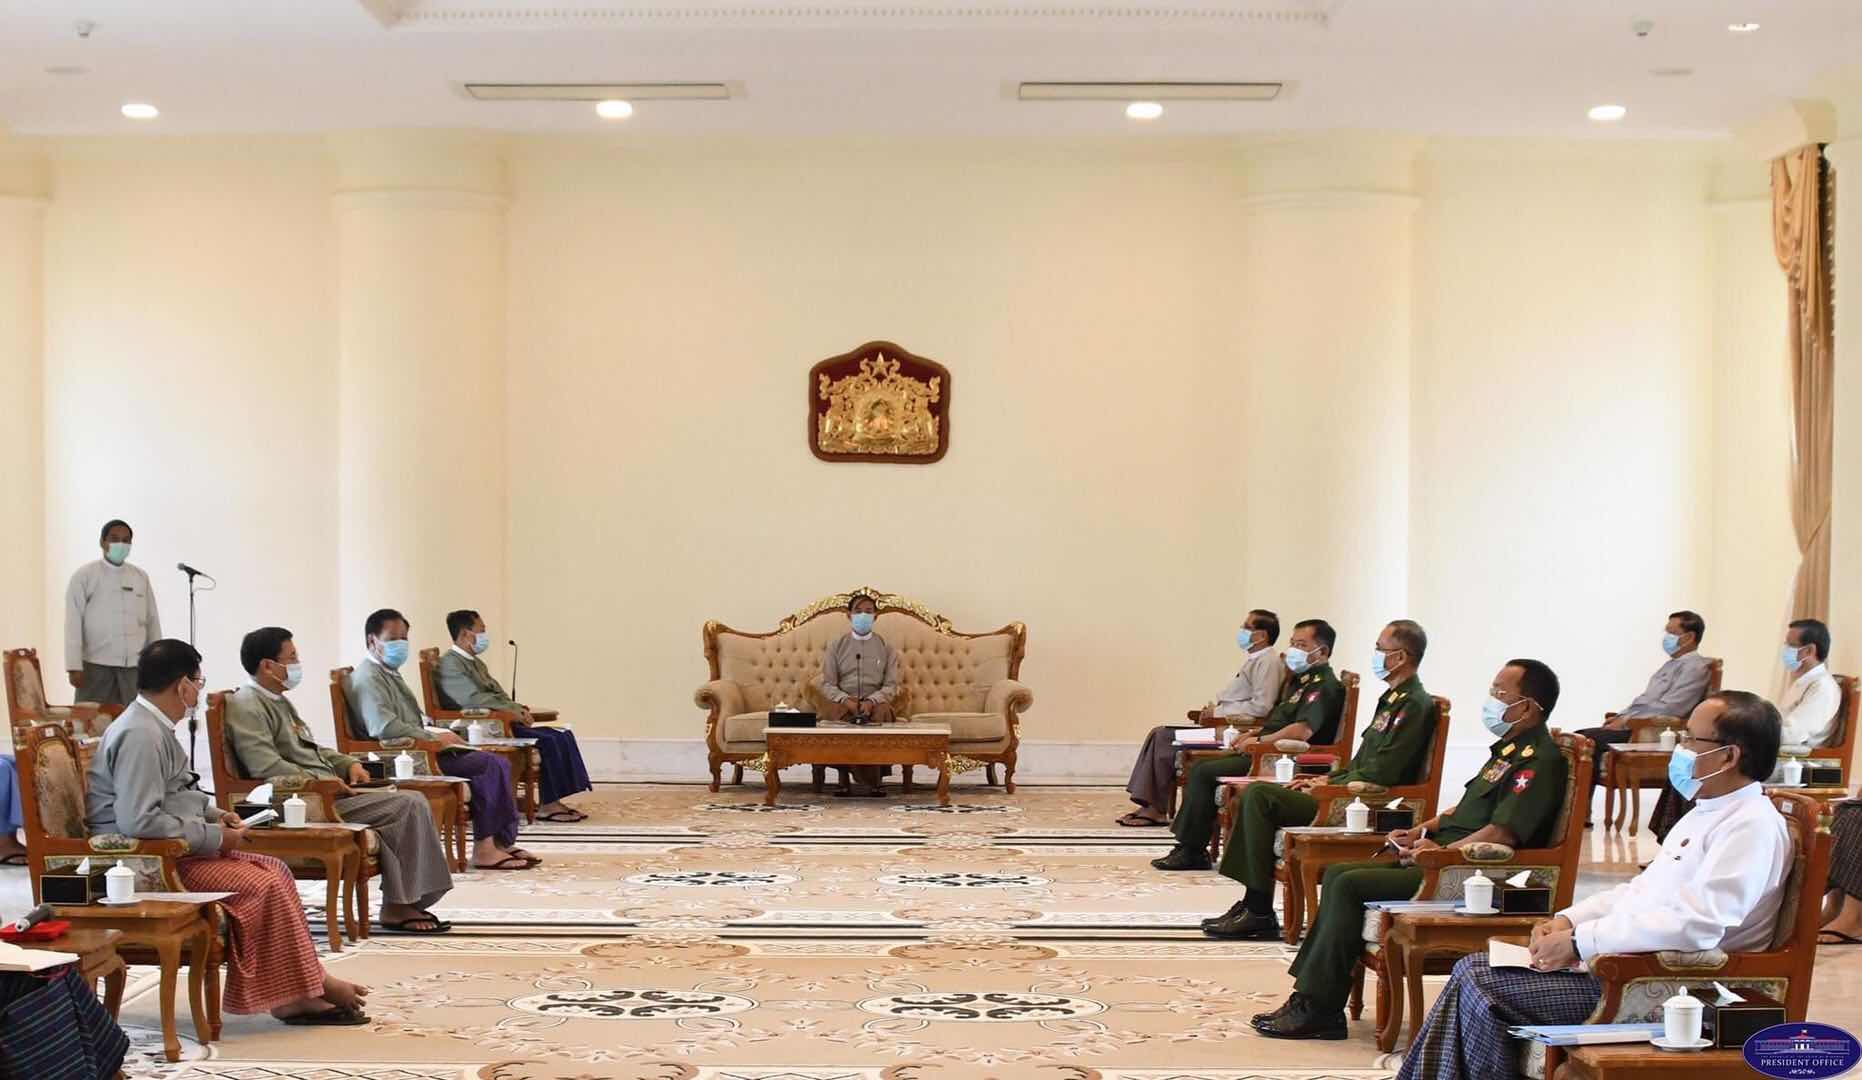 နိုင်ငံတော်သမ္မတဦးဝင်းမြင့်နှင့် ပြည်ထောင်စုရွေးကောက်ပွဲကော်မရှင်ဥက္ကဋ္ဌတို့ တွေ့ဆုံဆွေးနွေးစဉ် (သမ္မတရုံး)